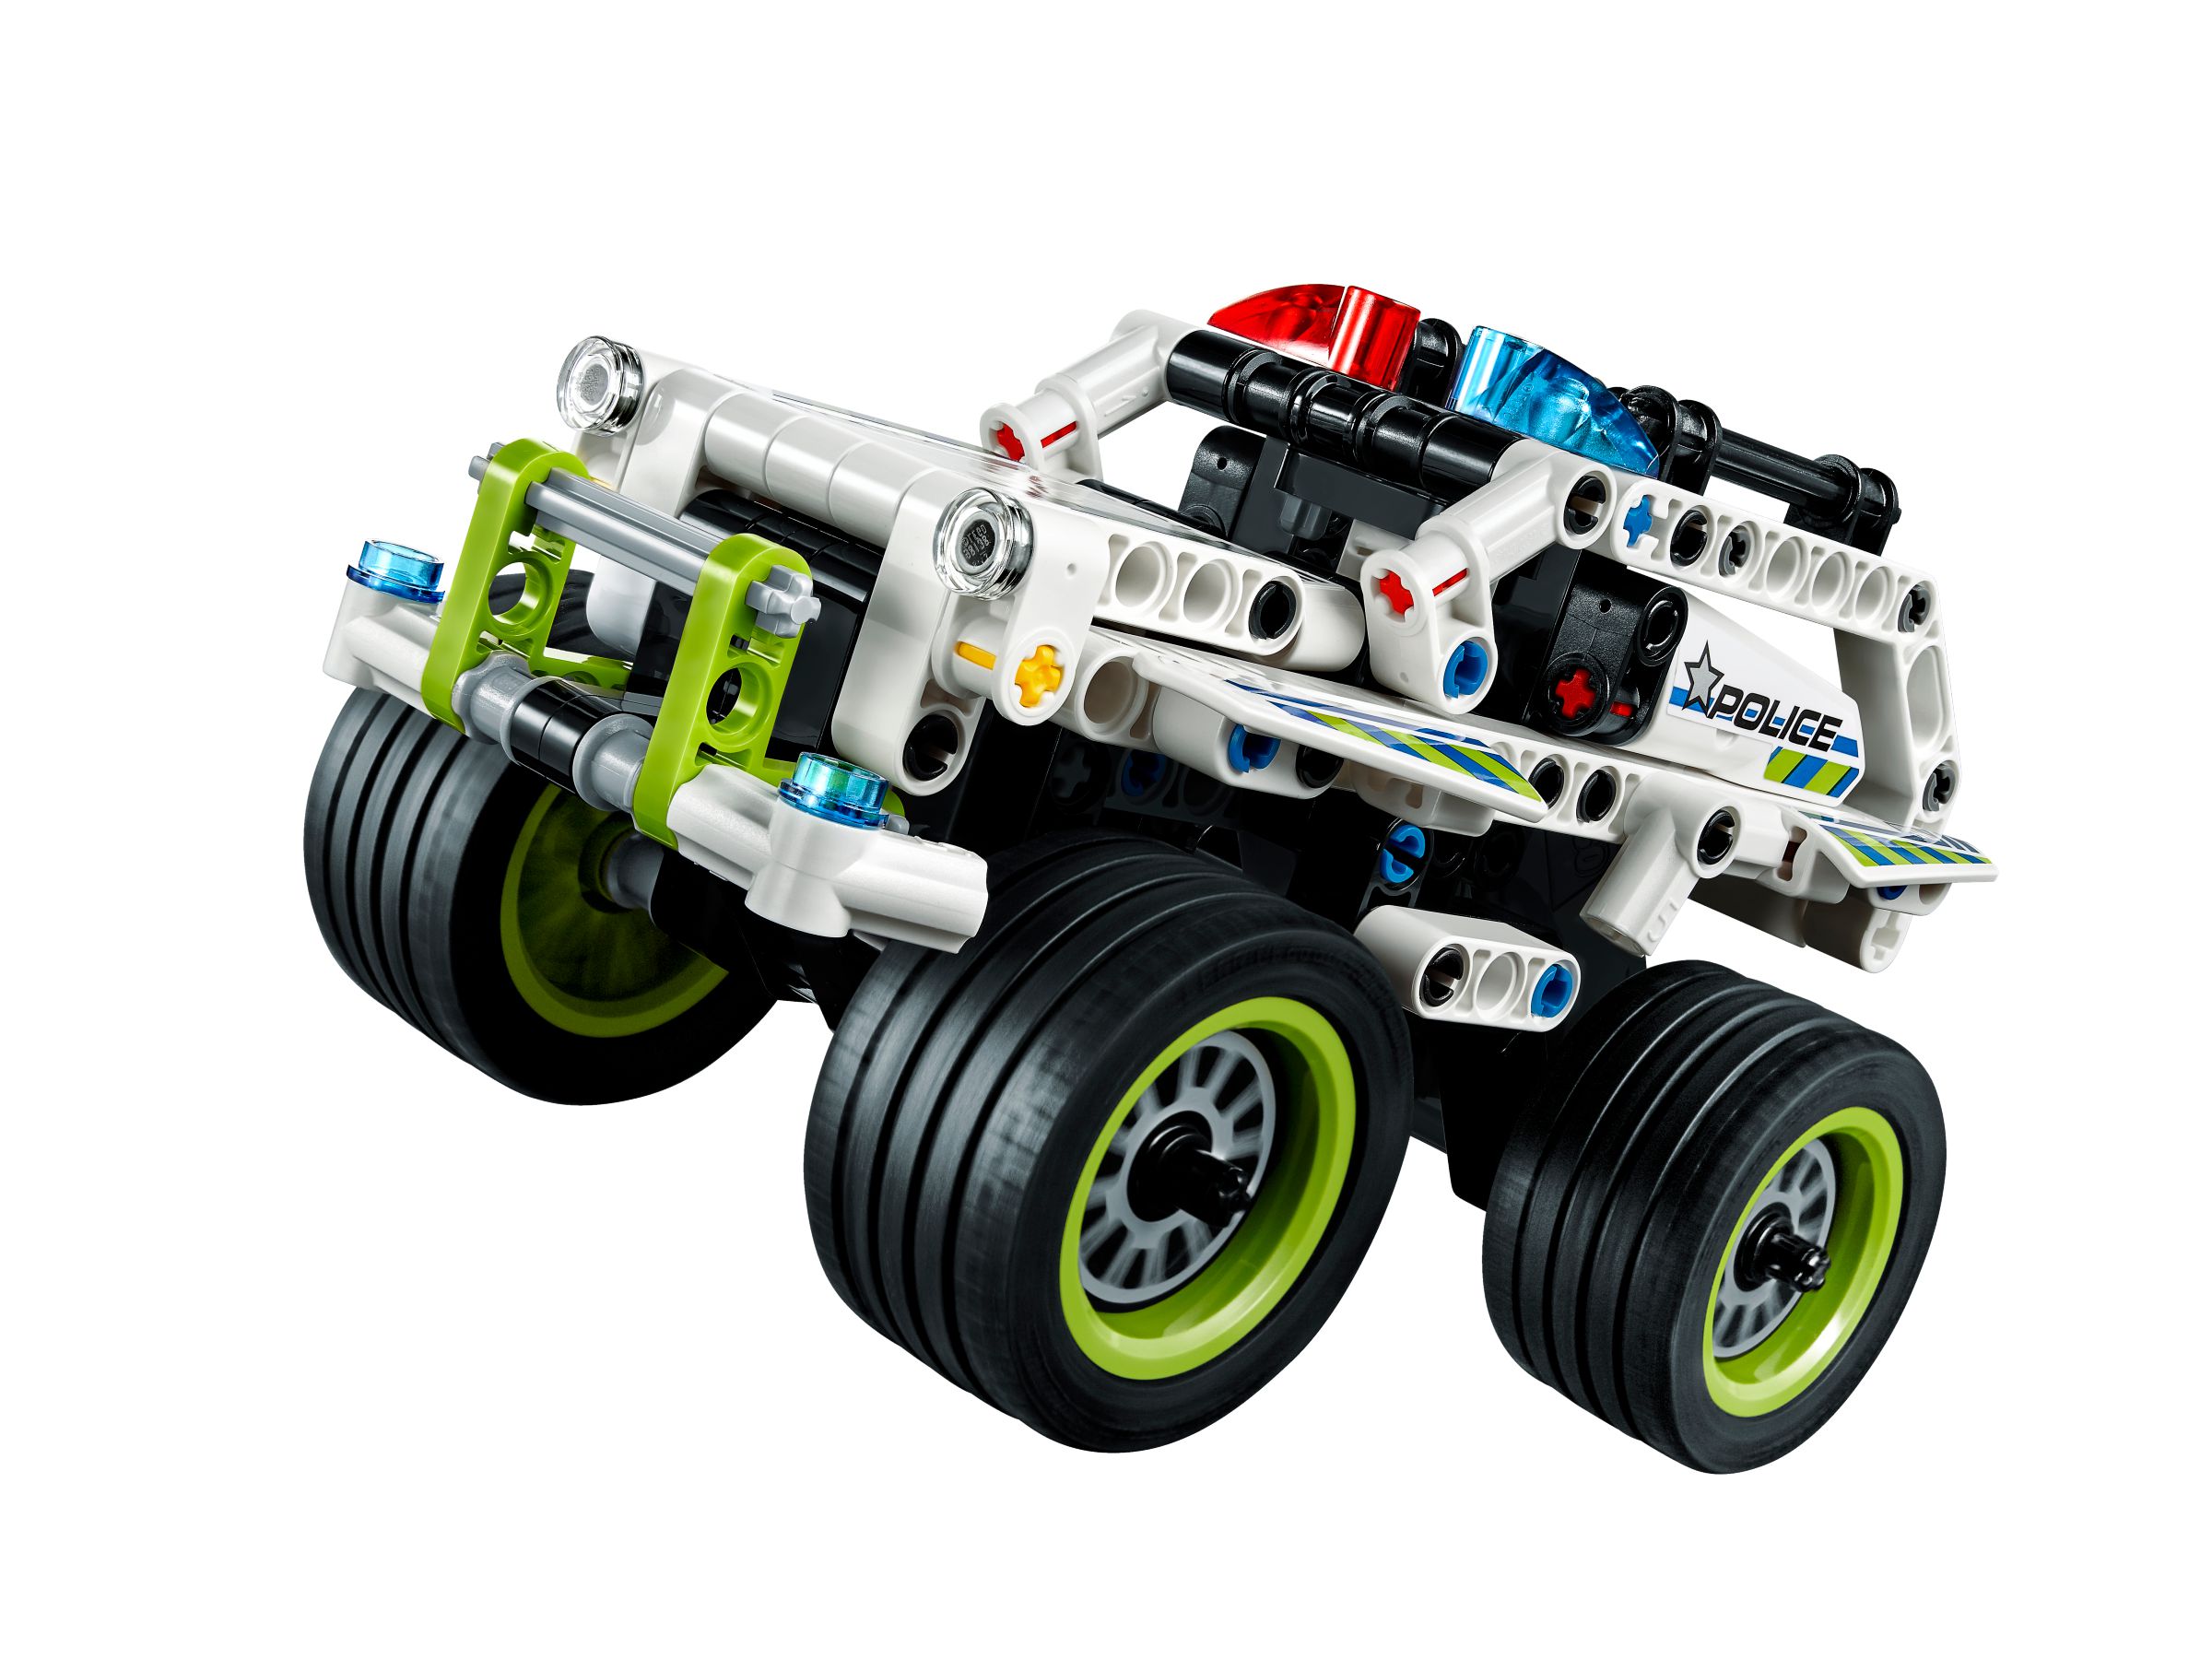 LEGO Technic 42046 Fluchtfahrzeug LEGO_42046_alt5.jpg